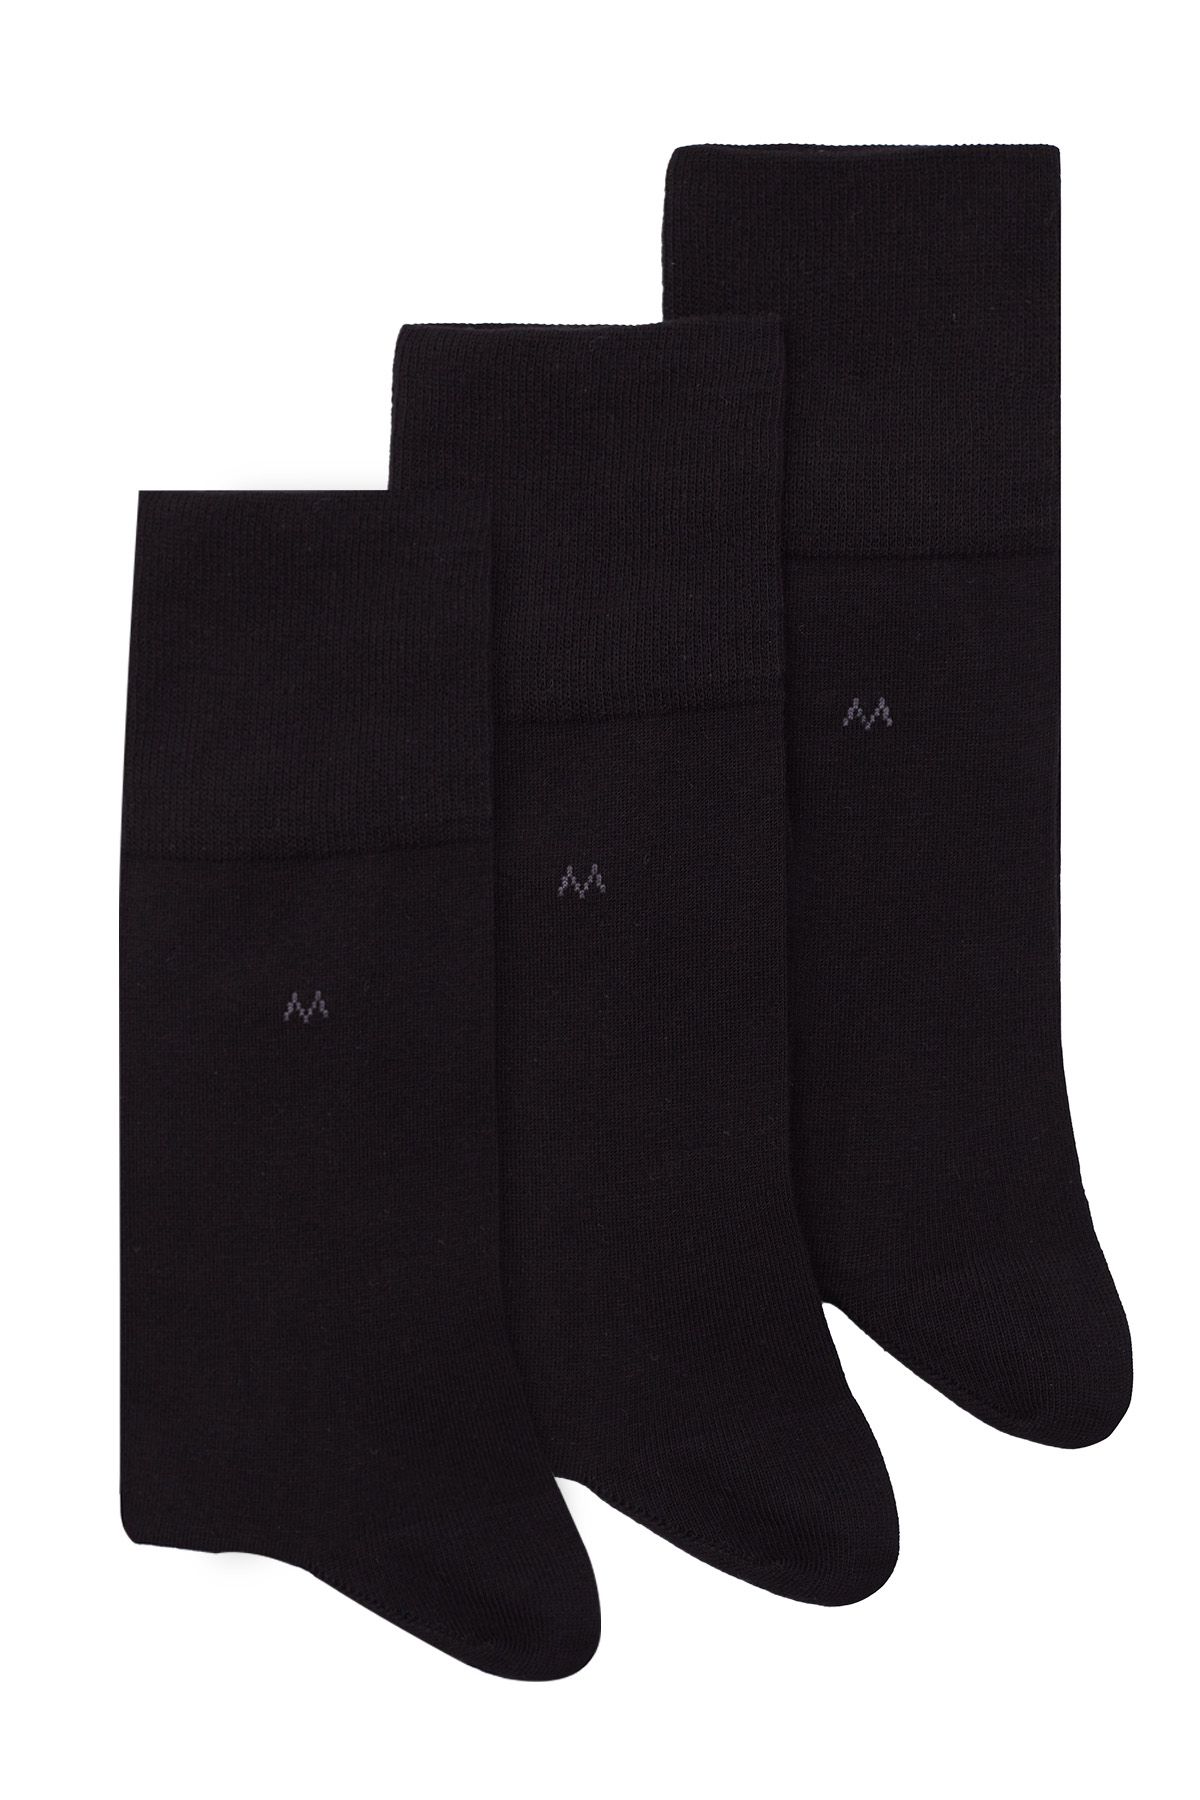 Hemington Pamuklu Siyah Üçlü Çorap Seti